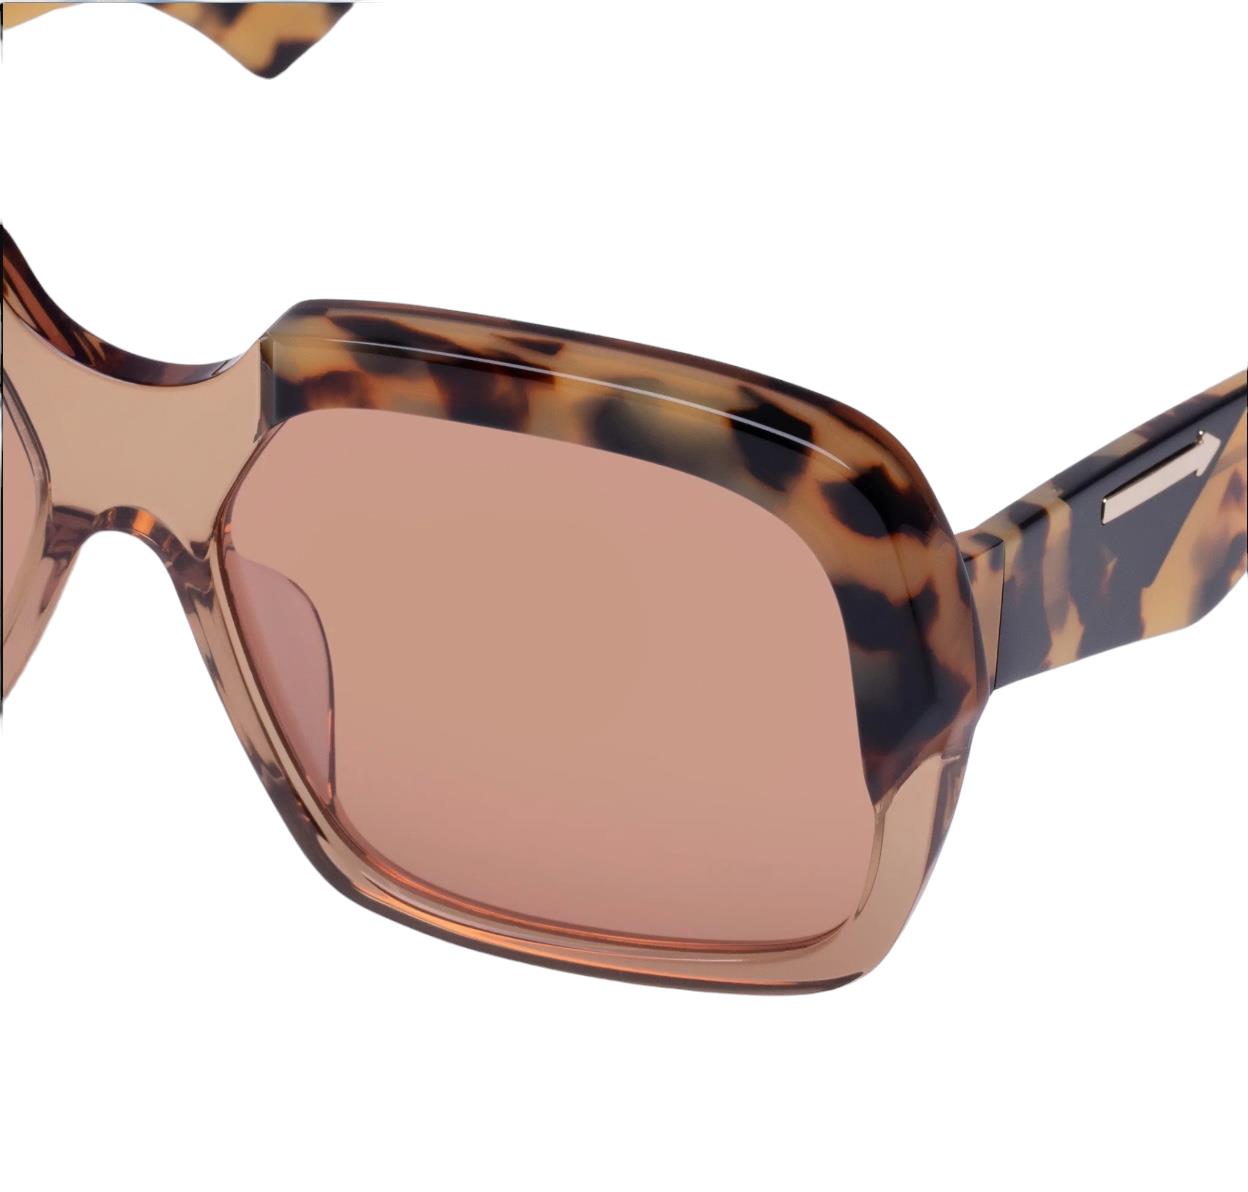 Karen Walker Asscher Sunglasses | Wheat Tortoise Shell, Oversized, Square, Retro